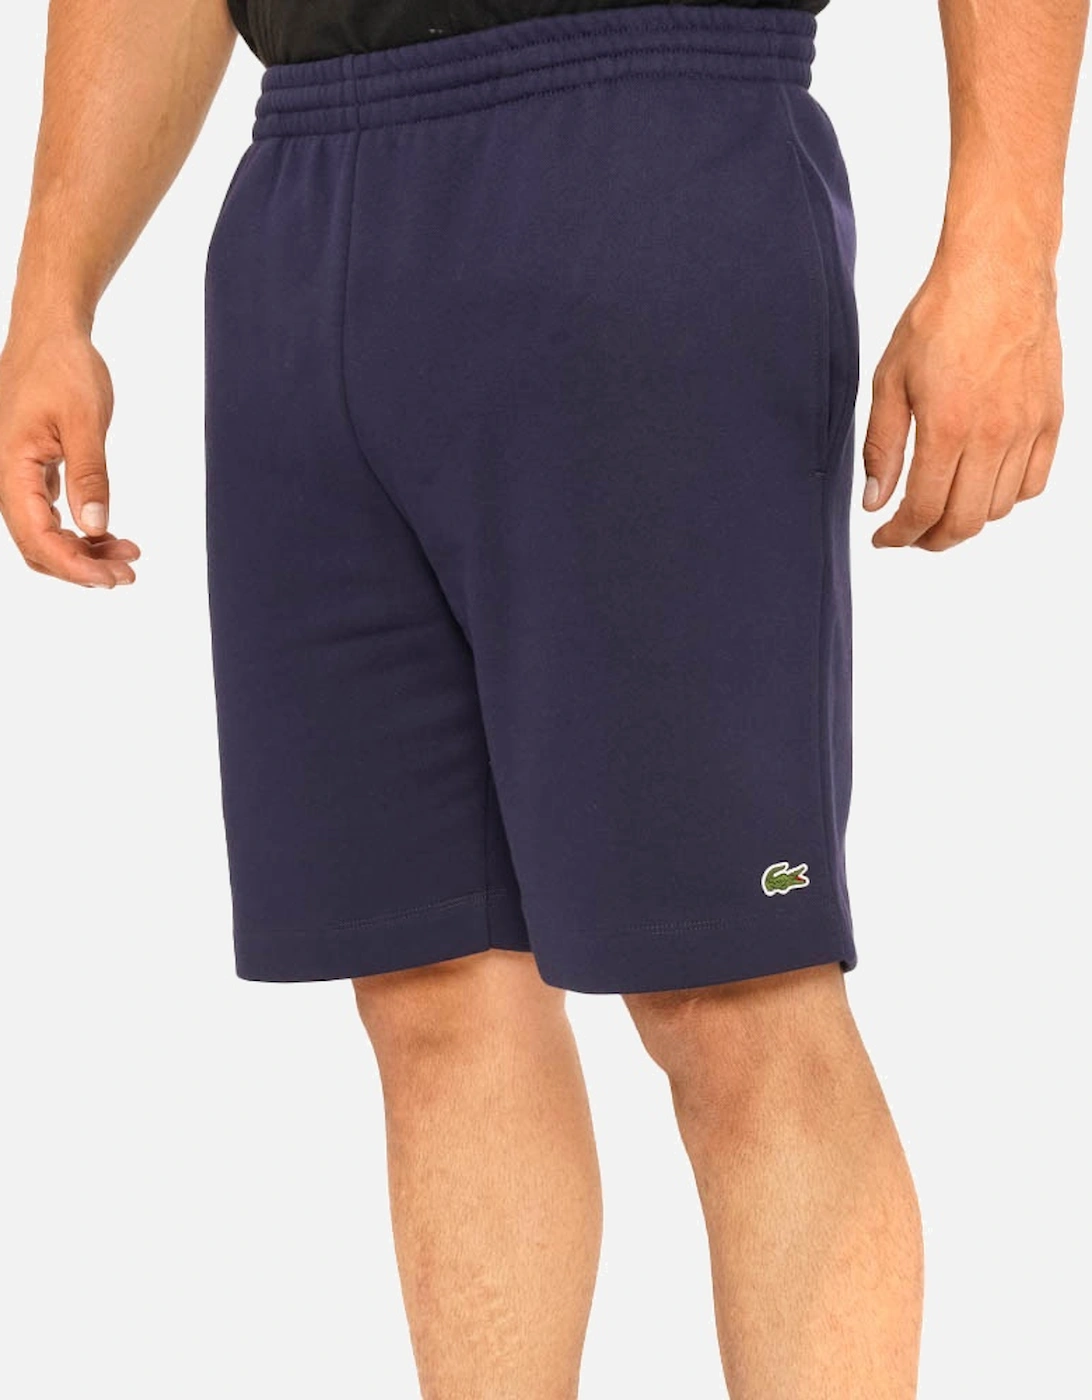 Mens Fleece Shorts (Navy)